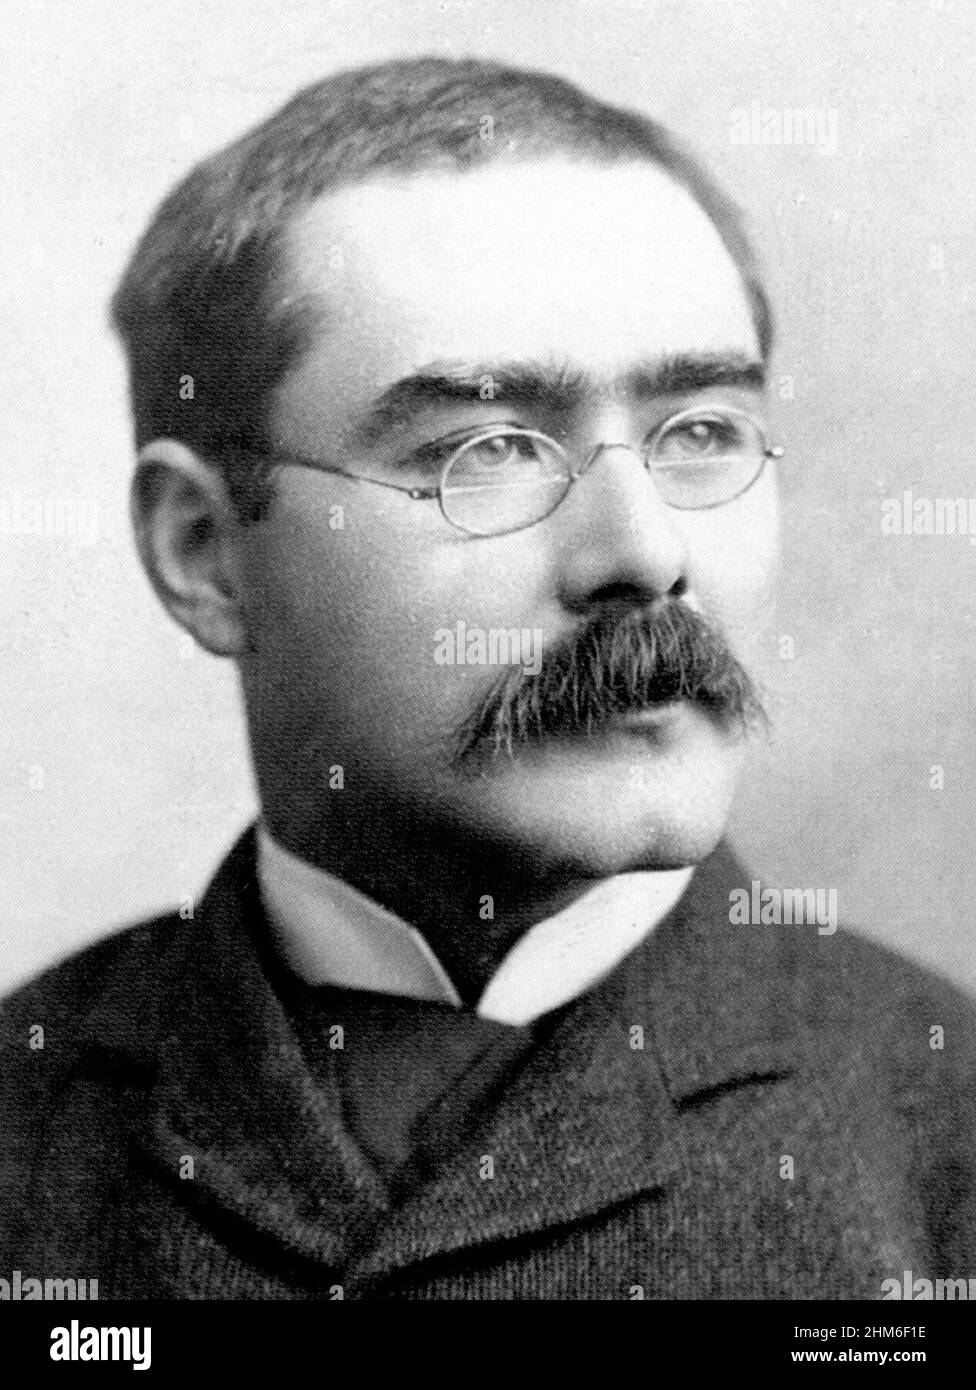 Ritratto dello scrittore e poeta inglese Rudyard Kipling dal 1895, quando aveva 30 anni. Foto Stock